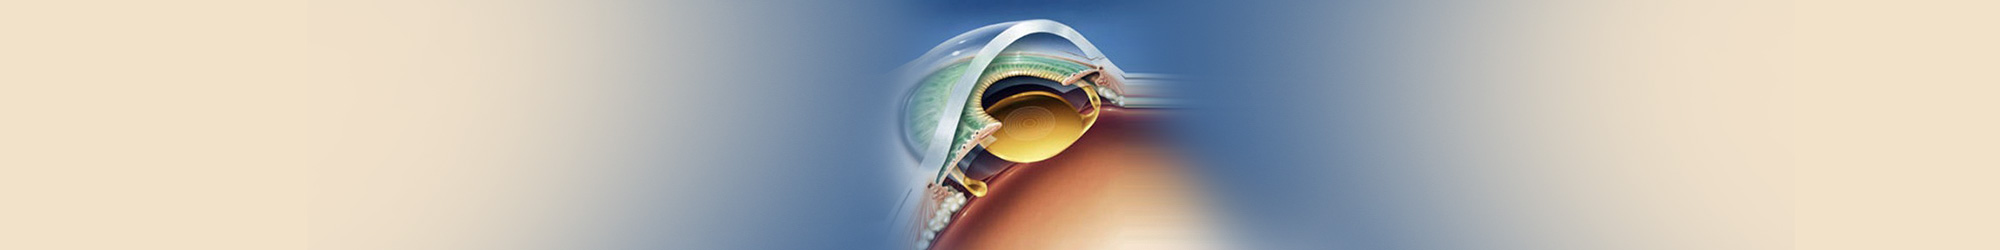 Lens Implant Treatment in Mumbai, Bandra, and Kandivali.